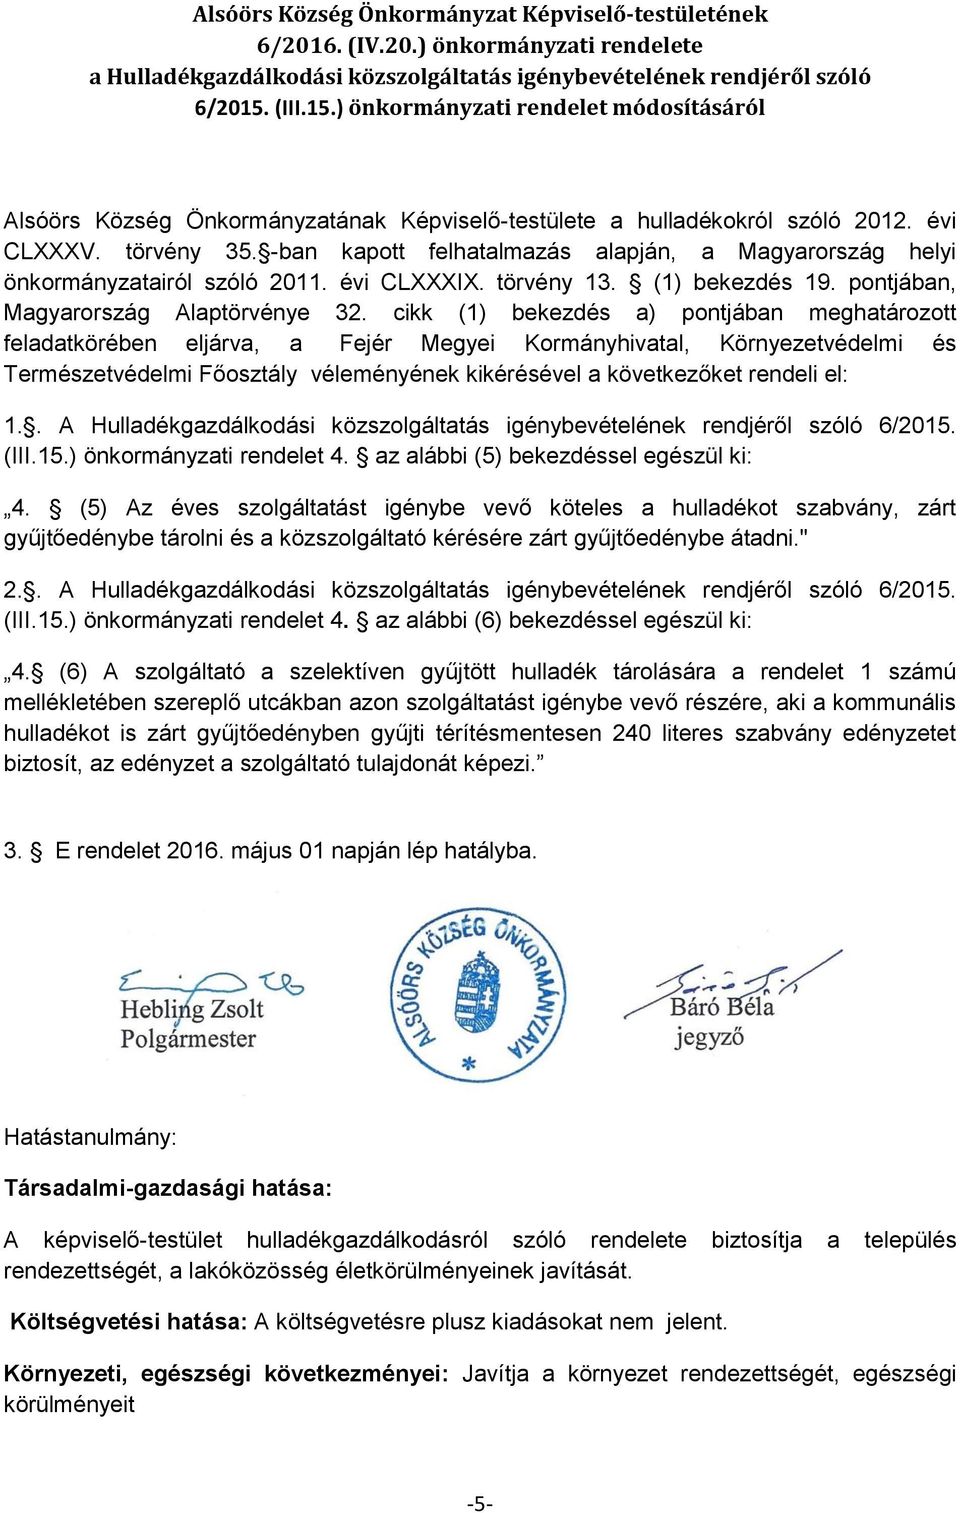 -ban kapott felhatalmazás alapján, a Magyarország helyi önkormányzatairól szóló 2011. évi CLXXXIX. törvény 13. (1) bekezdés 19. pontjában, Magyarország Alaptörvénye 32.